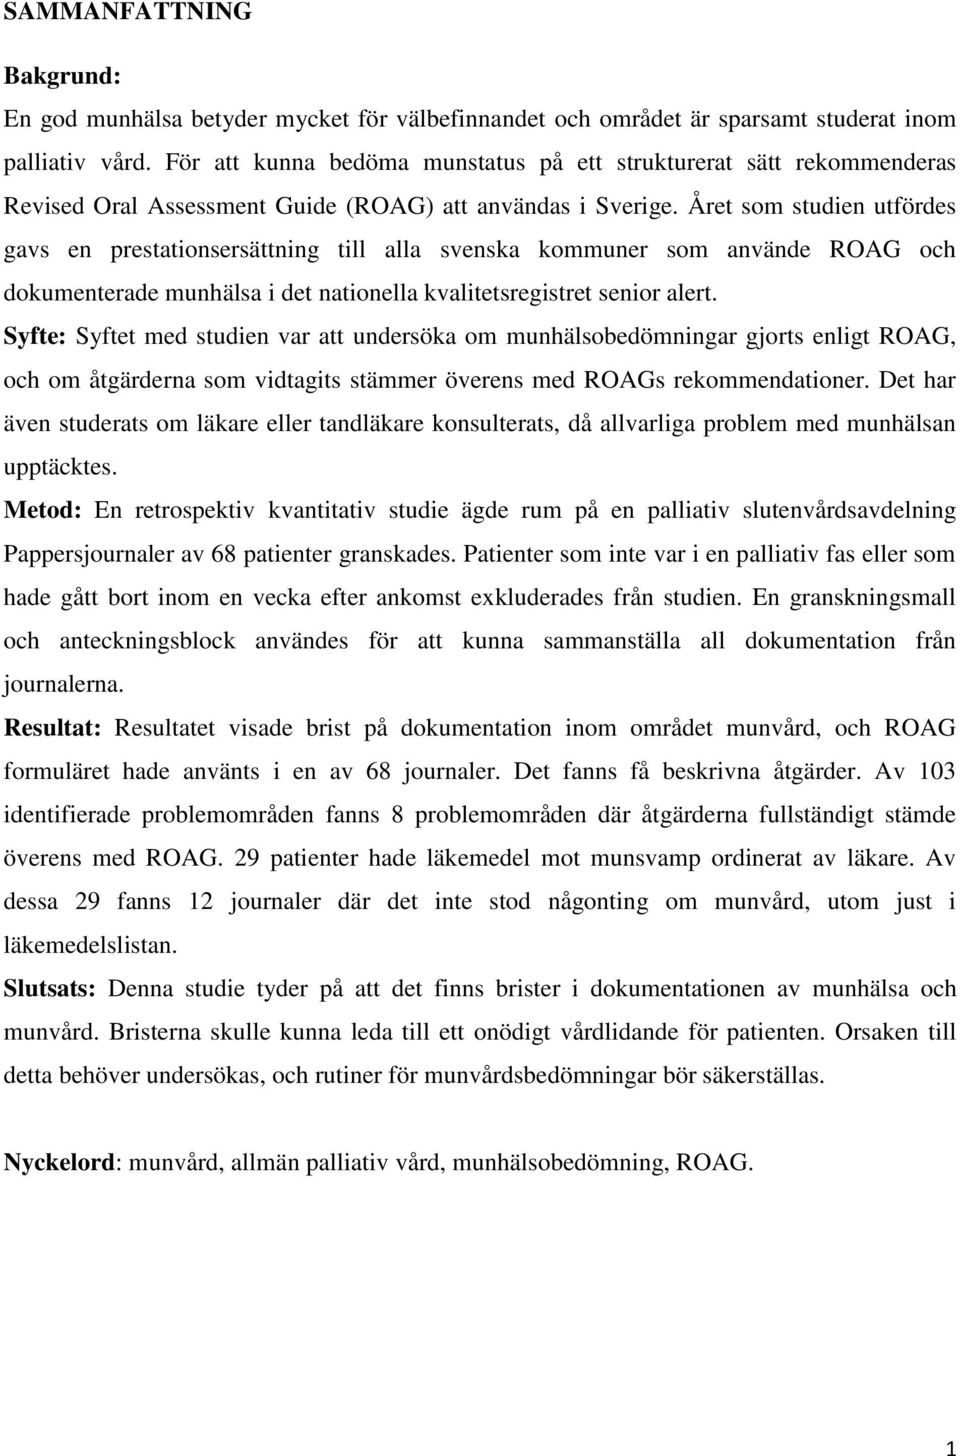 Året som studien utfördes gavs en prestationsersättning till alla svenska kommuner som använde ROAG och dokumenterade munhälsa i det nationella kvalitetsregistret senior alert.